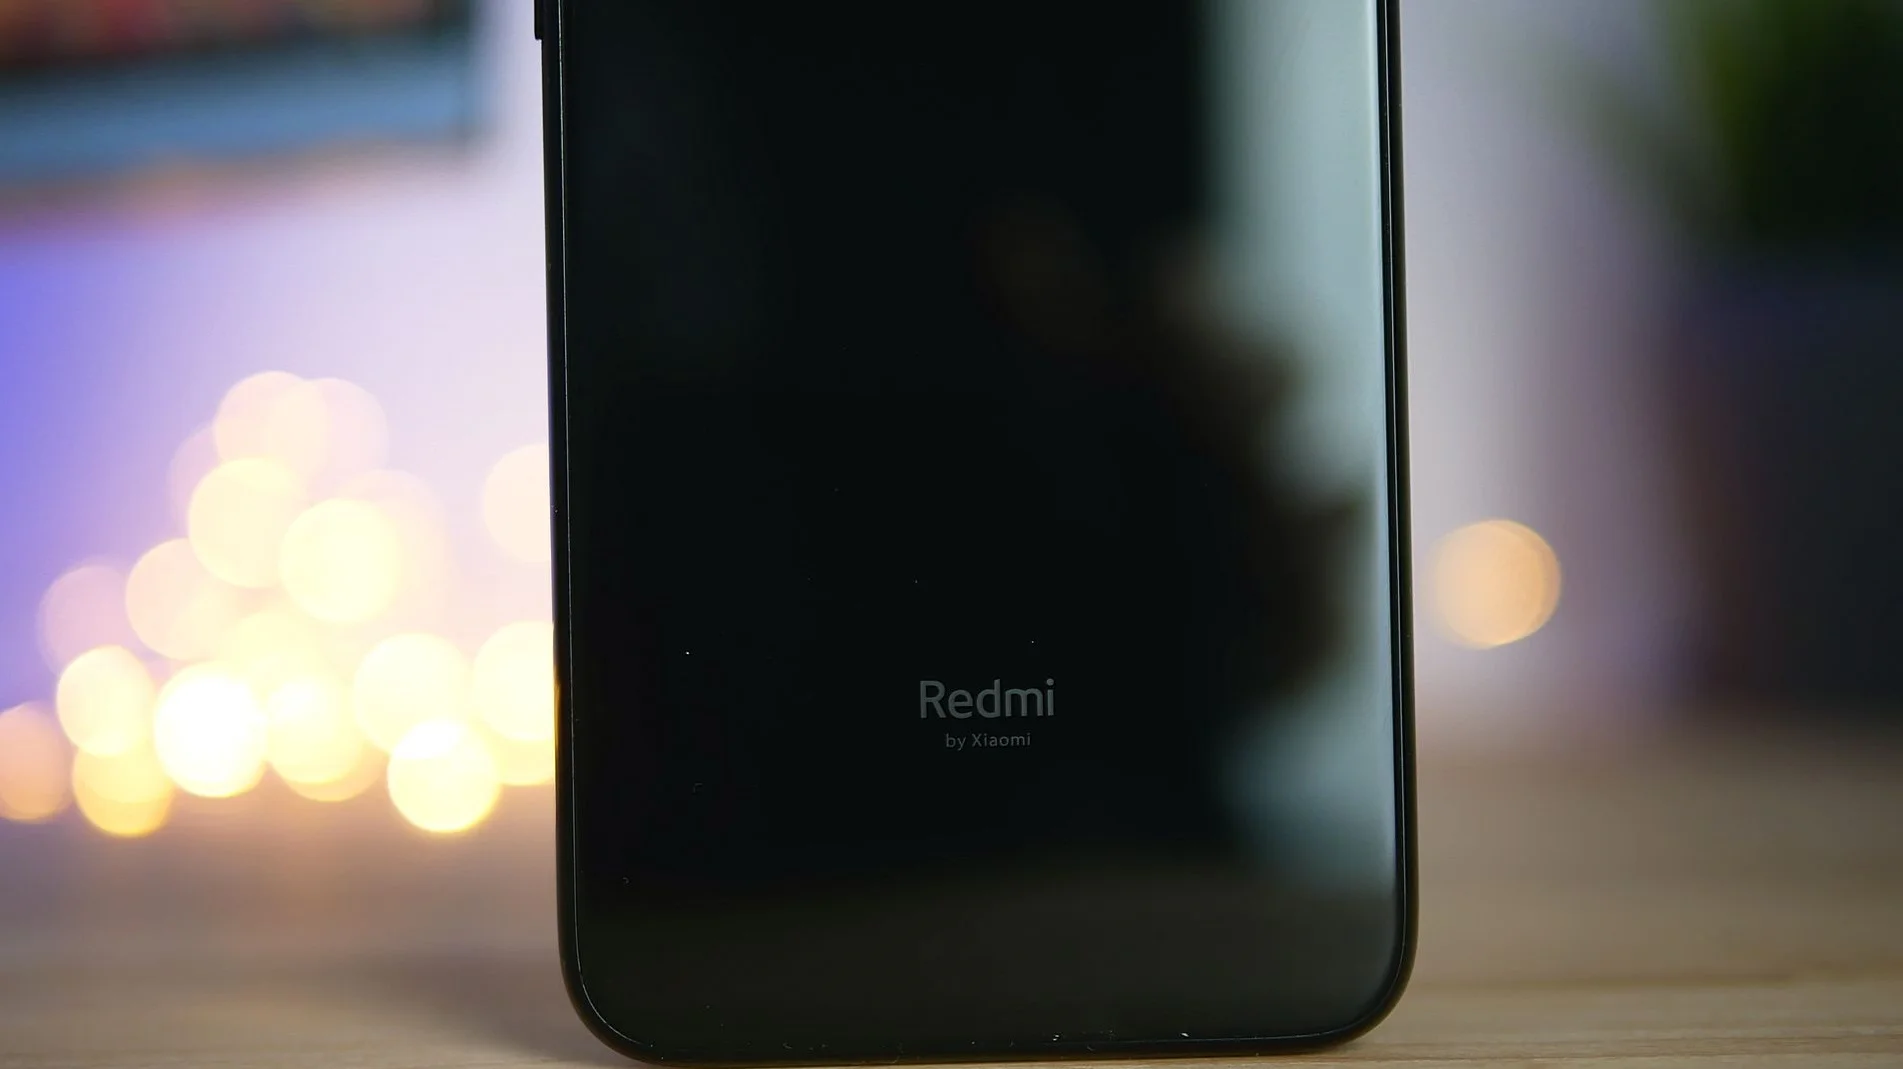 Redmi X на официальном фото: выдвижная селфи-камера и Железный человек на заставке - фото 1